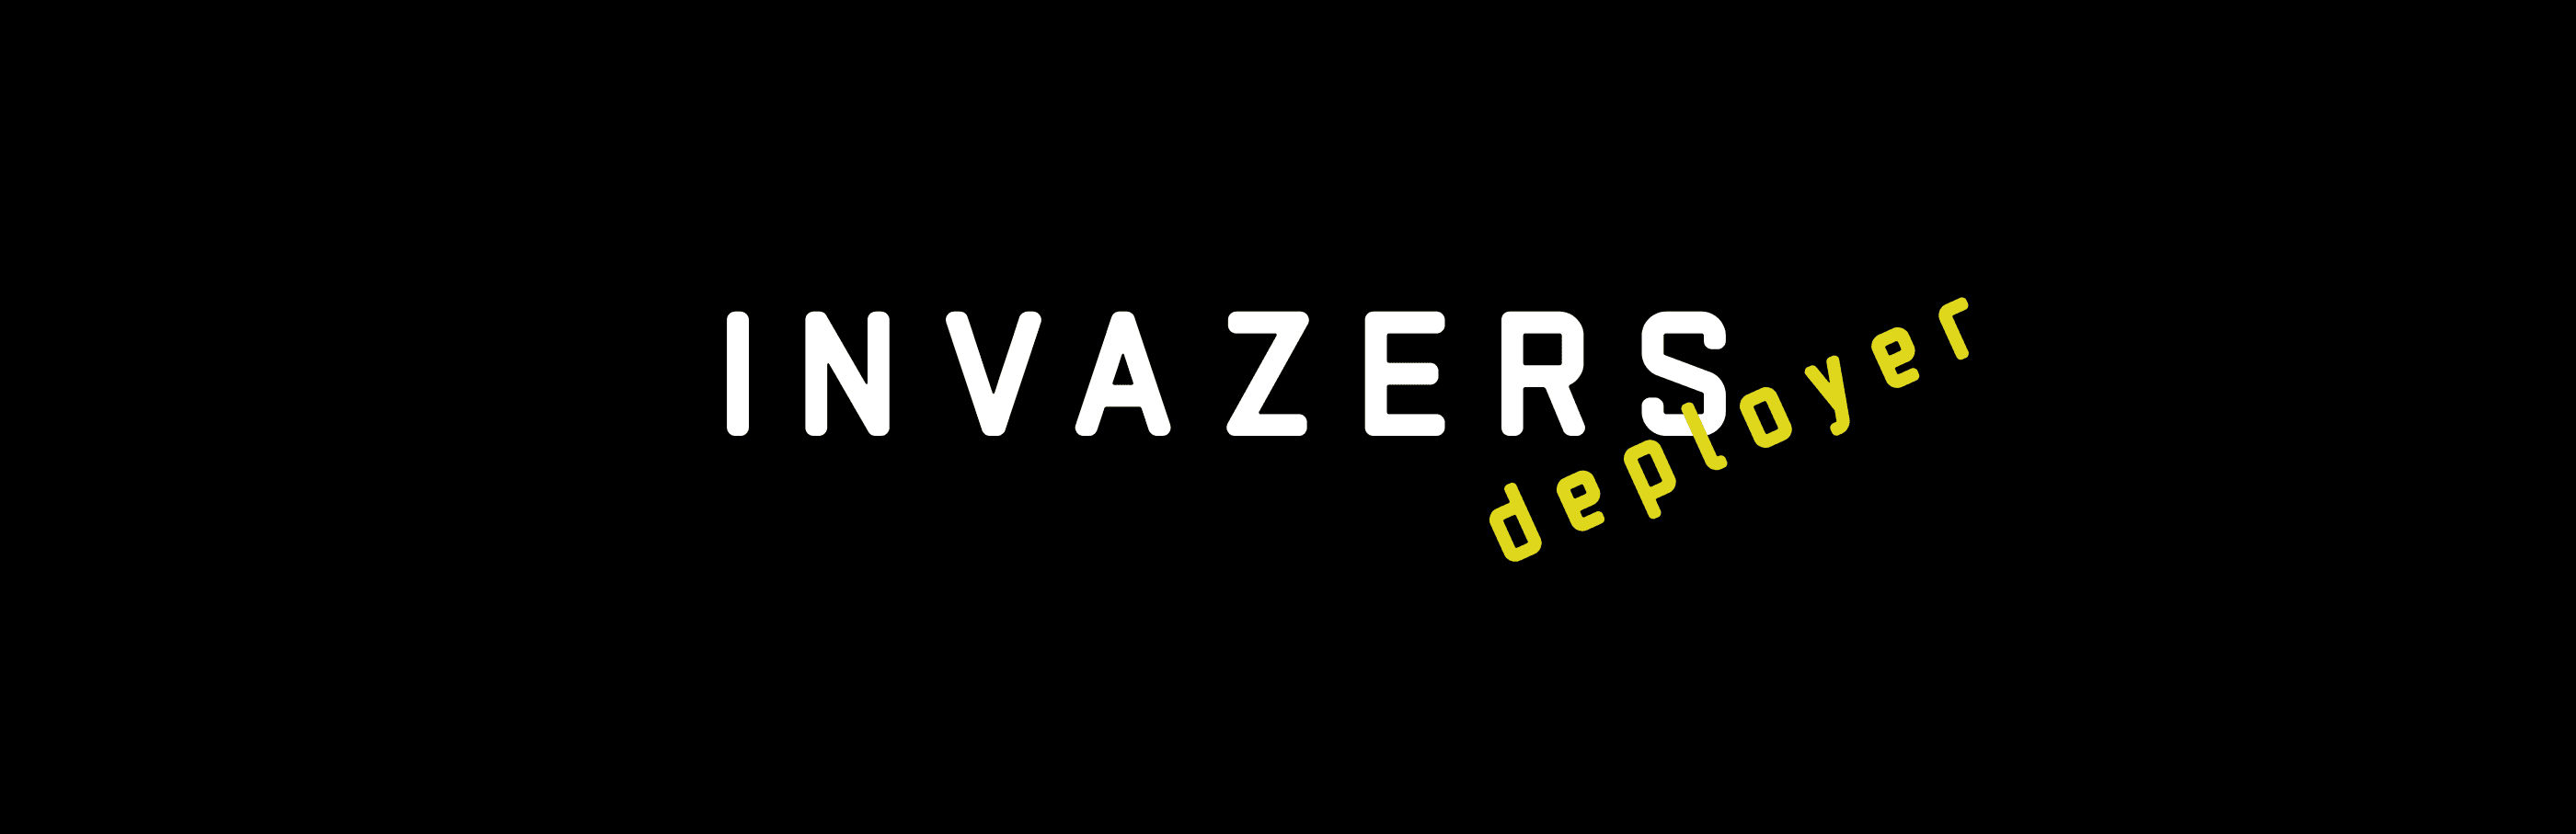 invazers_io バナー